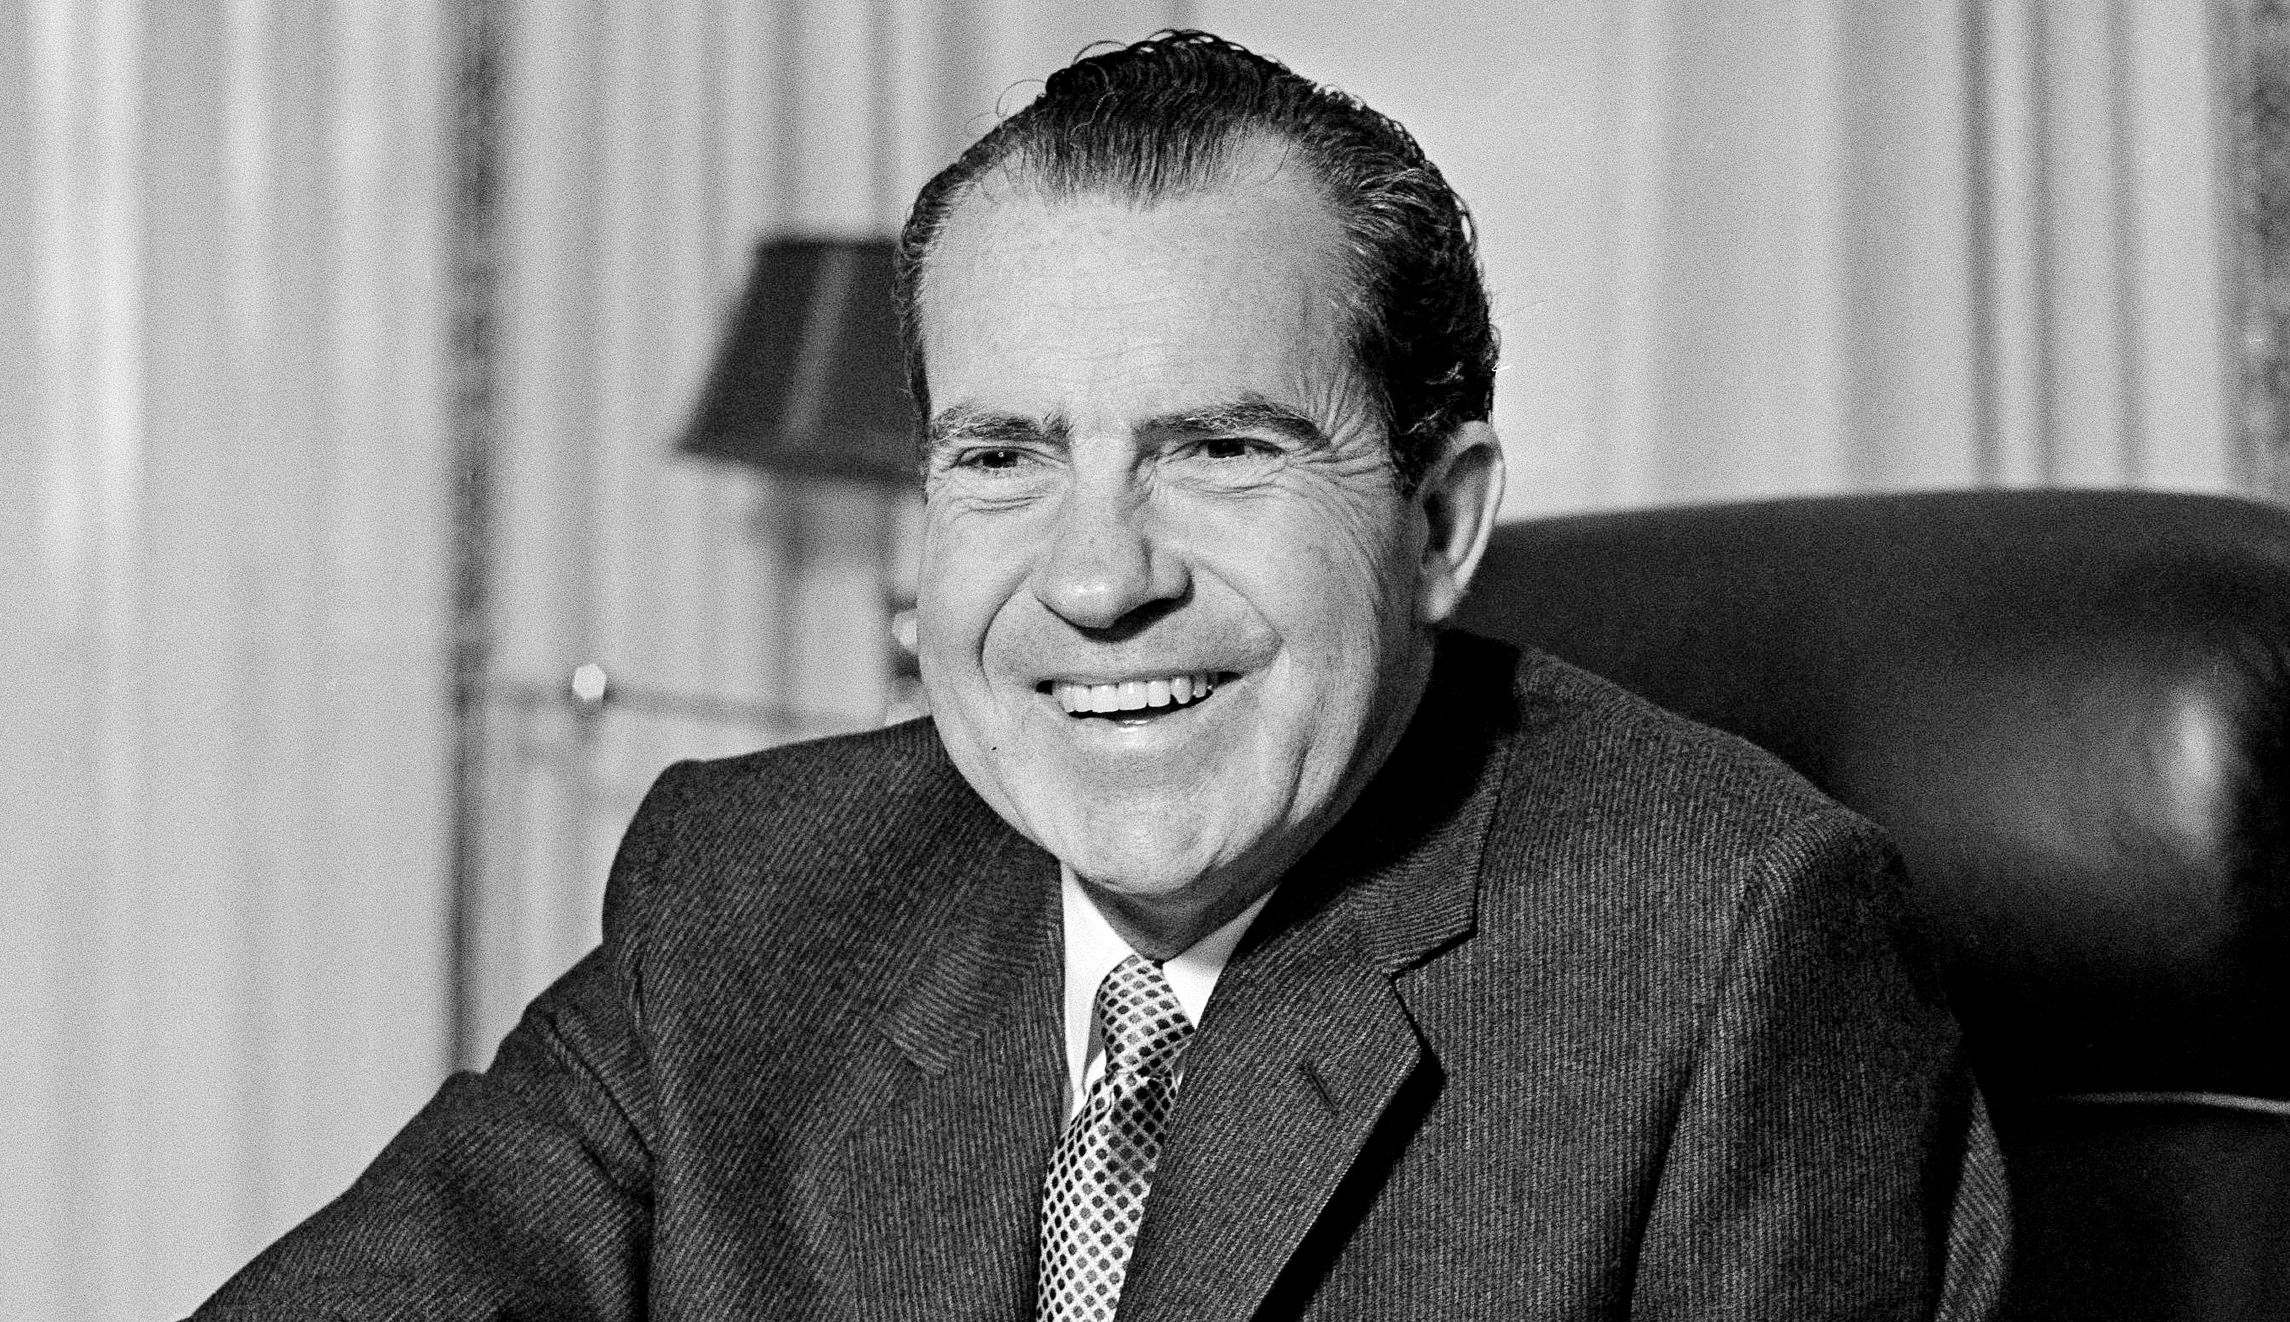 Is Richard Nixon cool now?